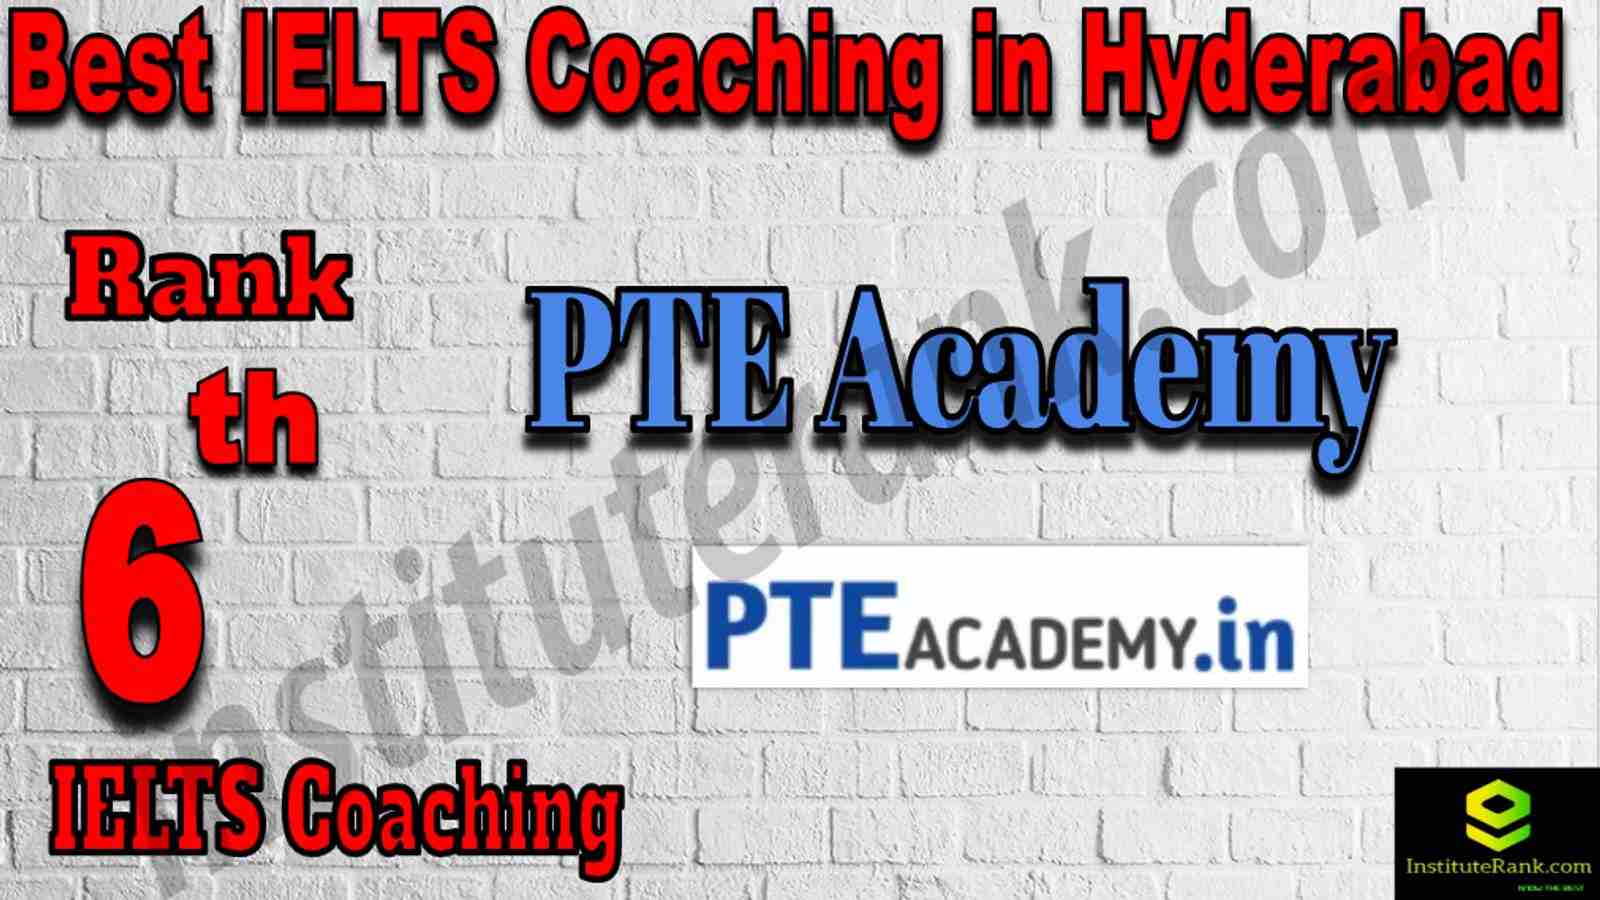 6th Best IELTS Coaching in Hyderabad